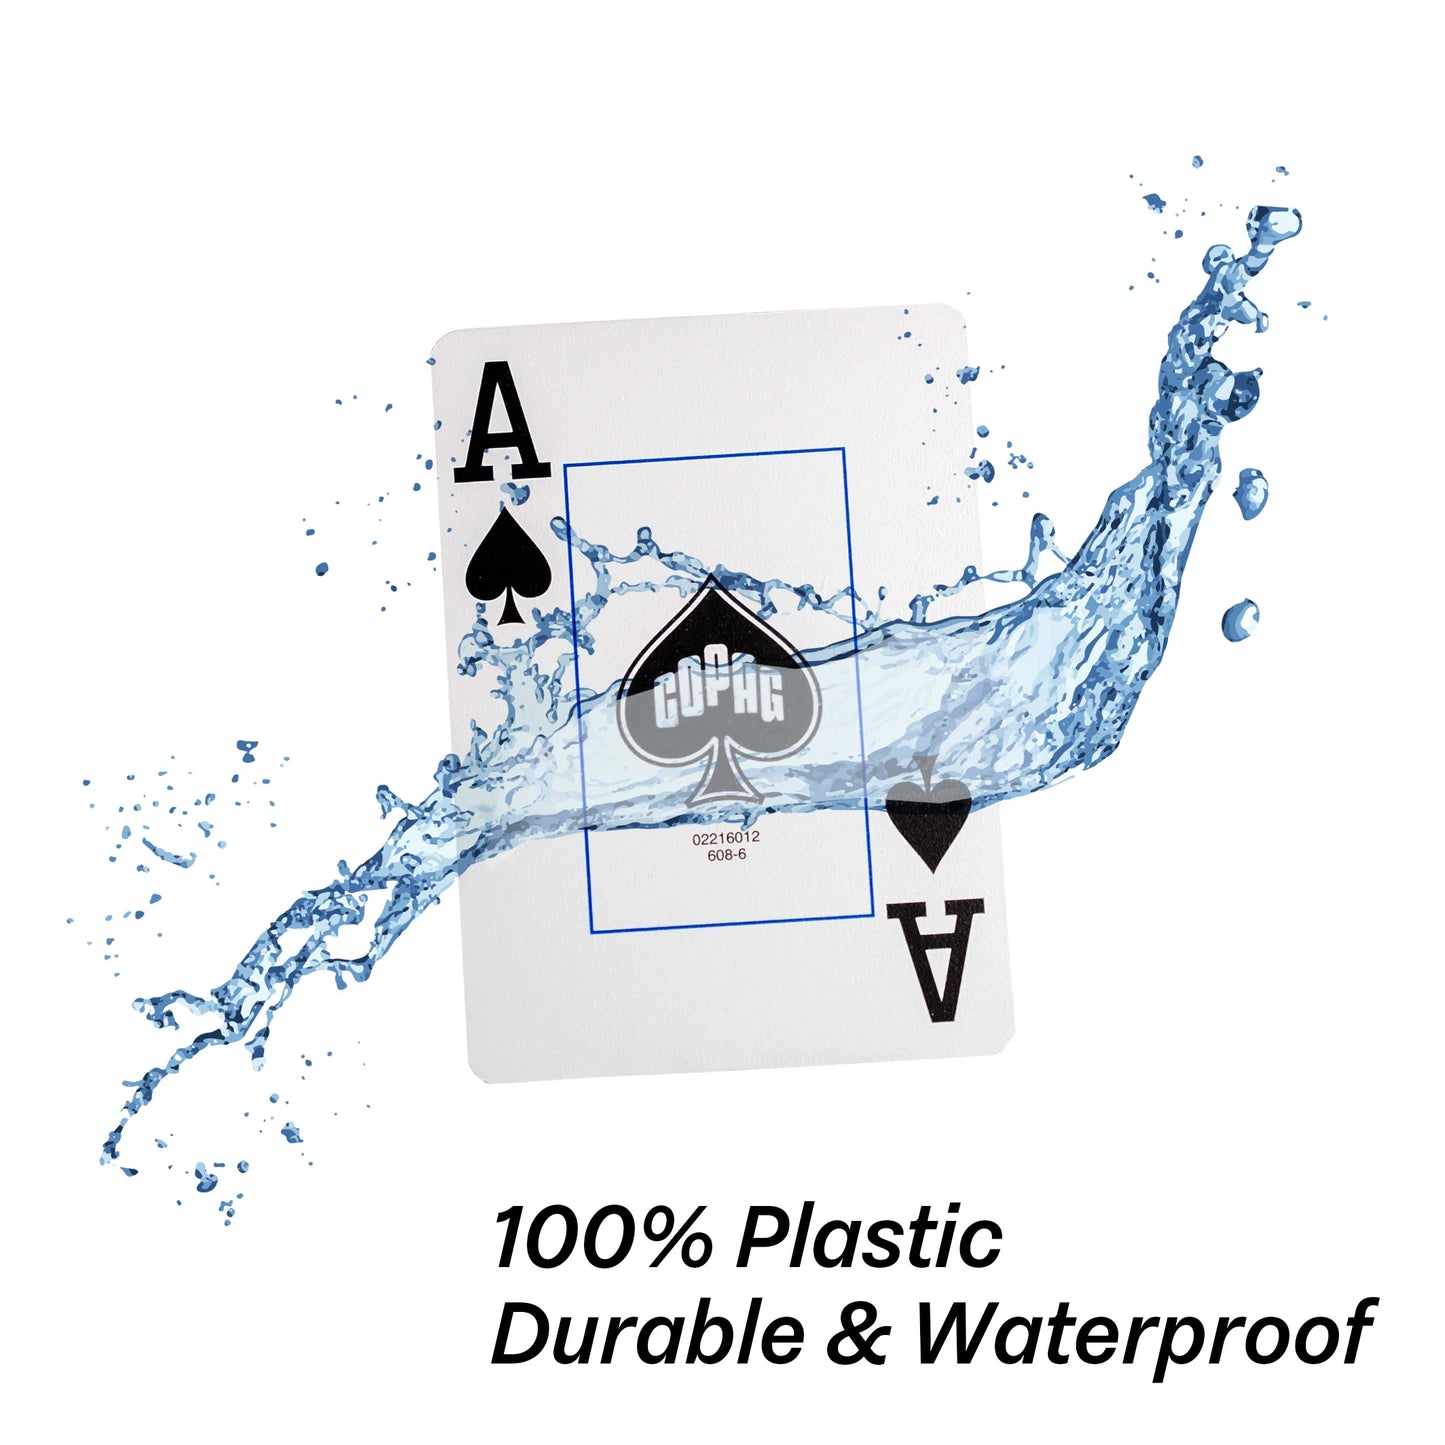 Copag Elite 100% Plastic Jumbo Index – 6 Deck Set